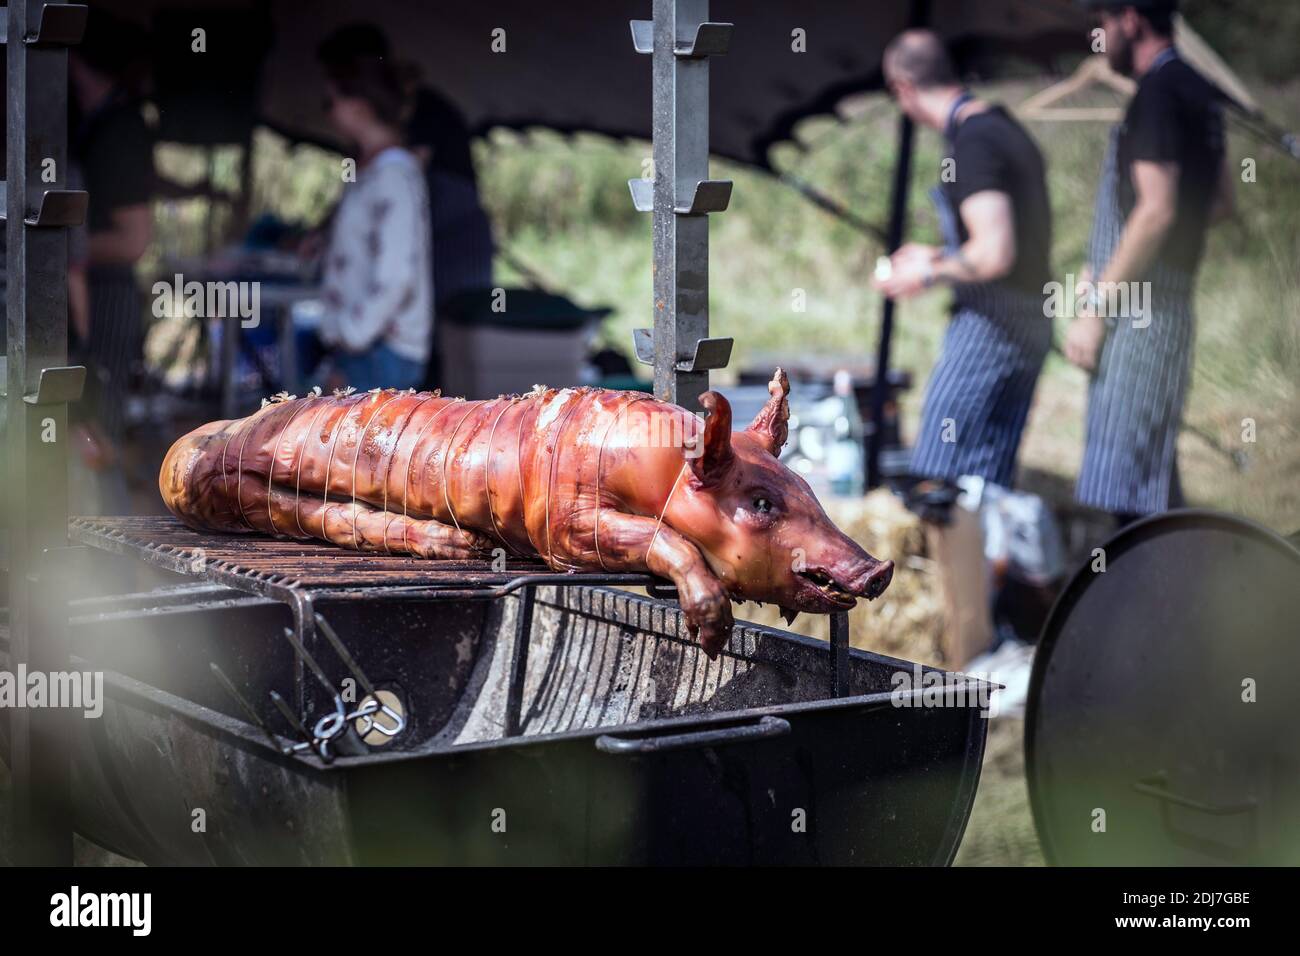 Un porc grillé au charbon traditionnel et au feu. Le petit porc est rôti tout entier sur un feu ouvert. Banque D'Images